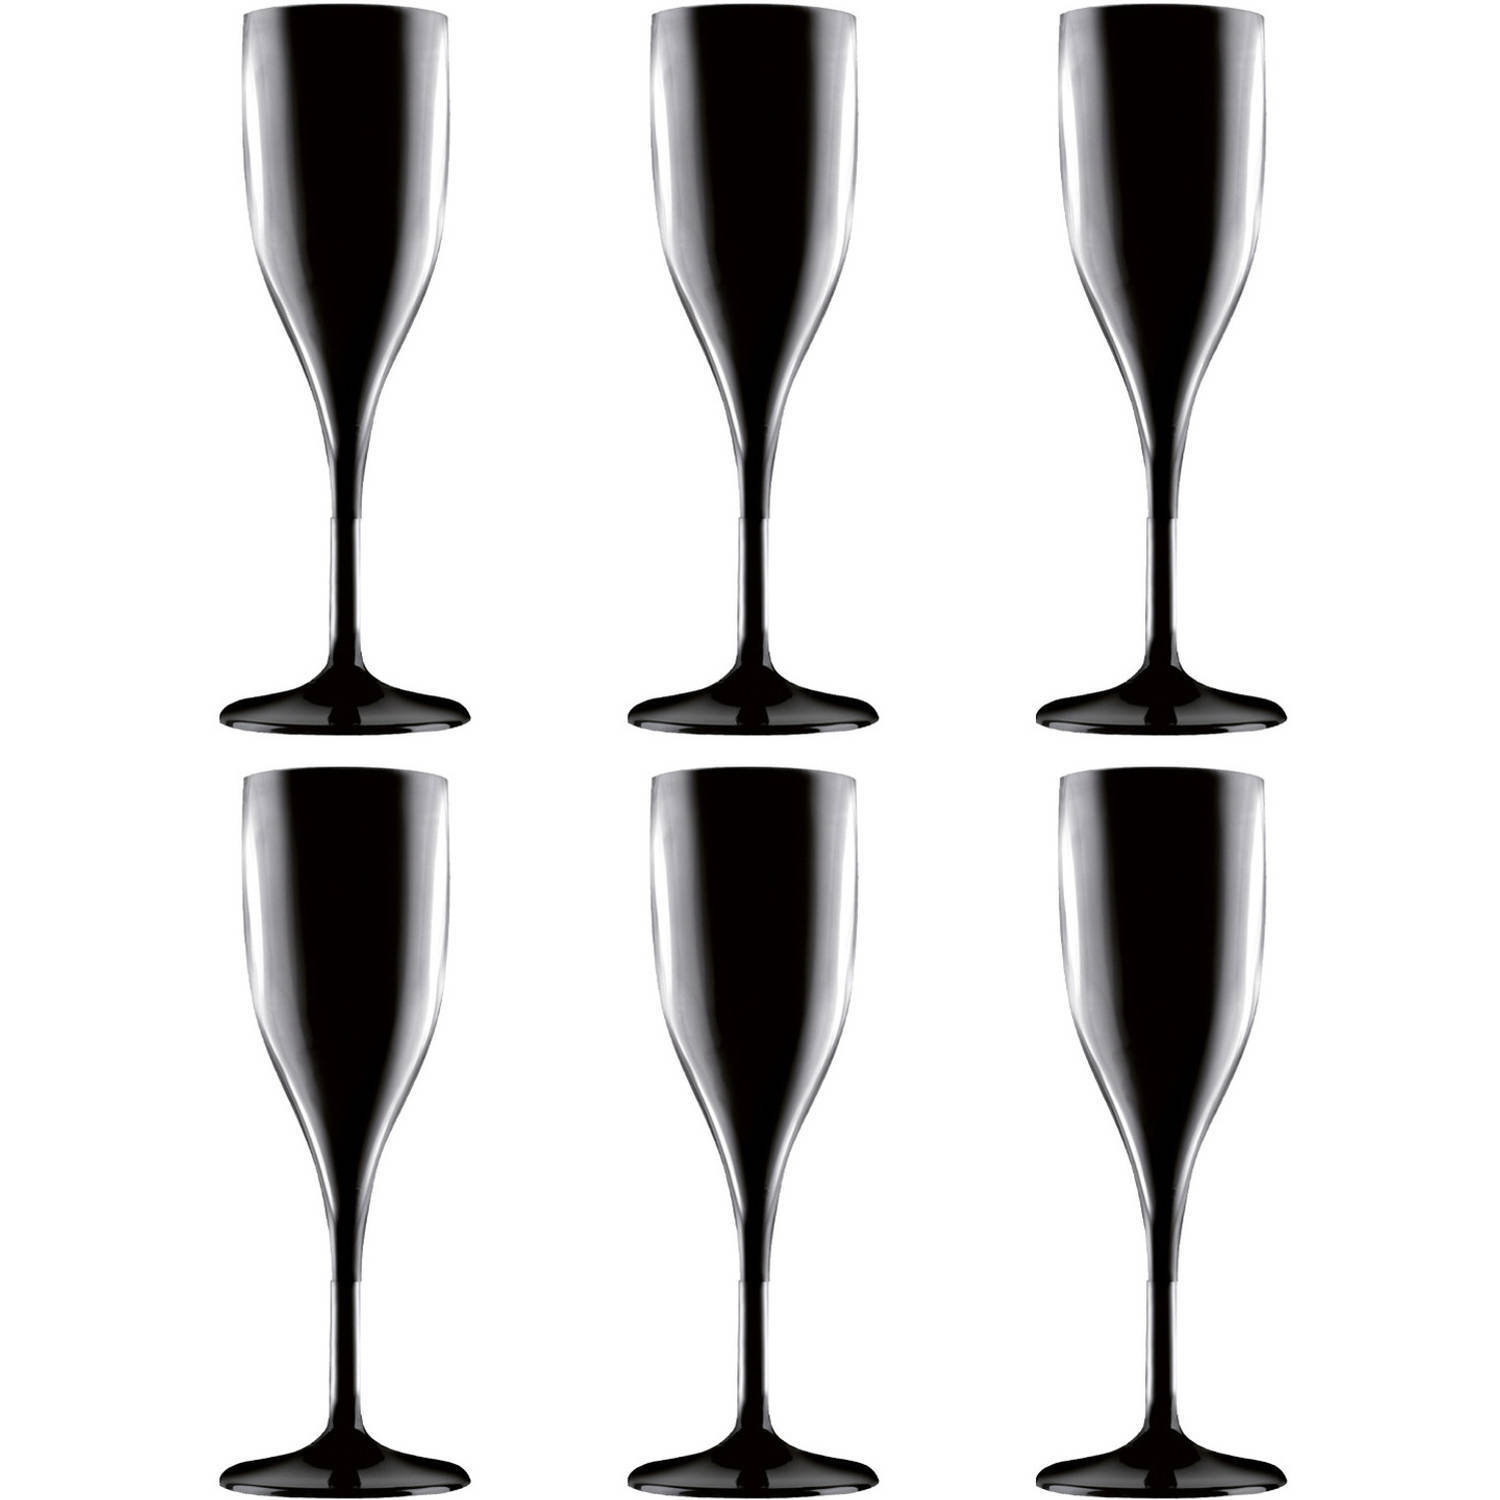 Santex Set van 6x stuks champagneglazen/prosecco flutes zwart 150 ml onbreekbaar herbruikbaar kunststof - Champagne serveren - Champagneflutes - Champagneglazen